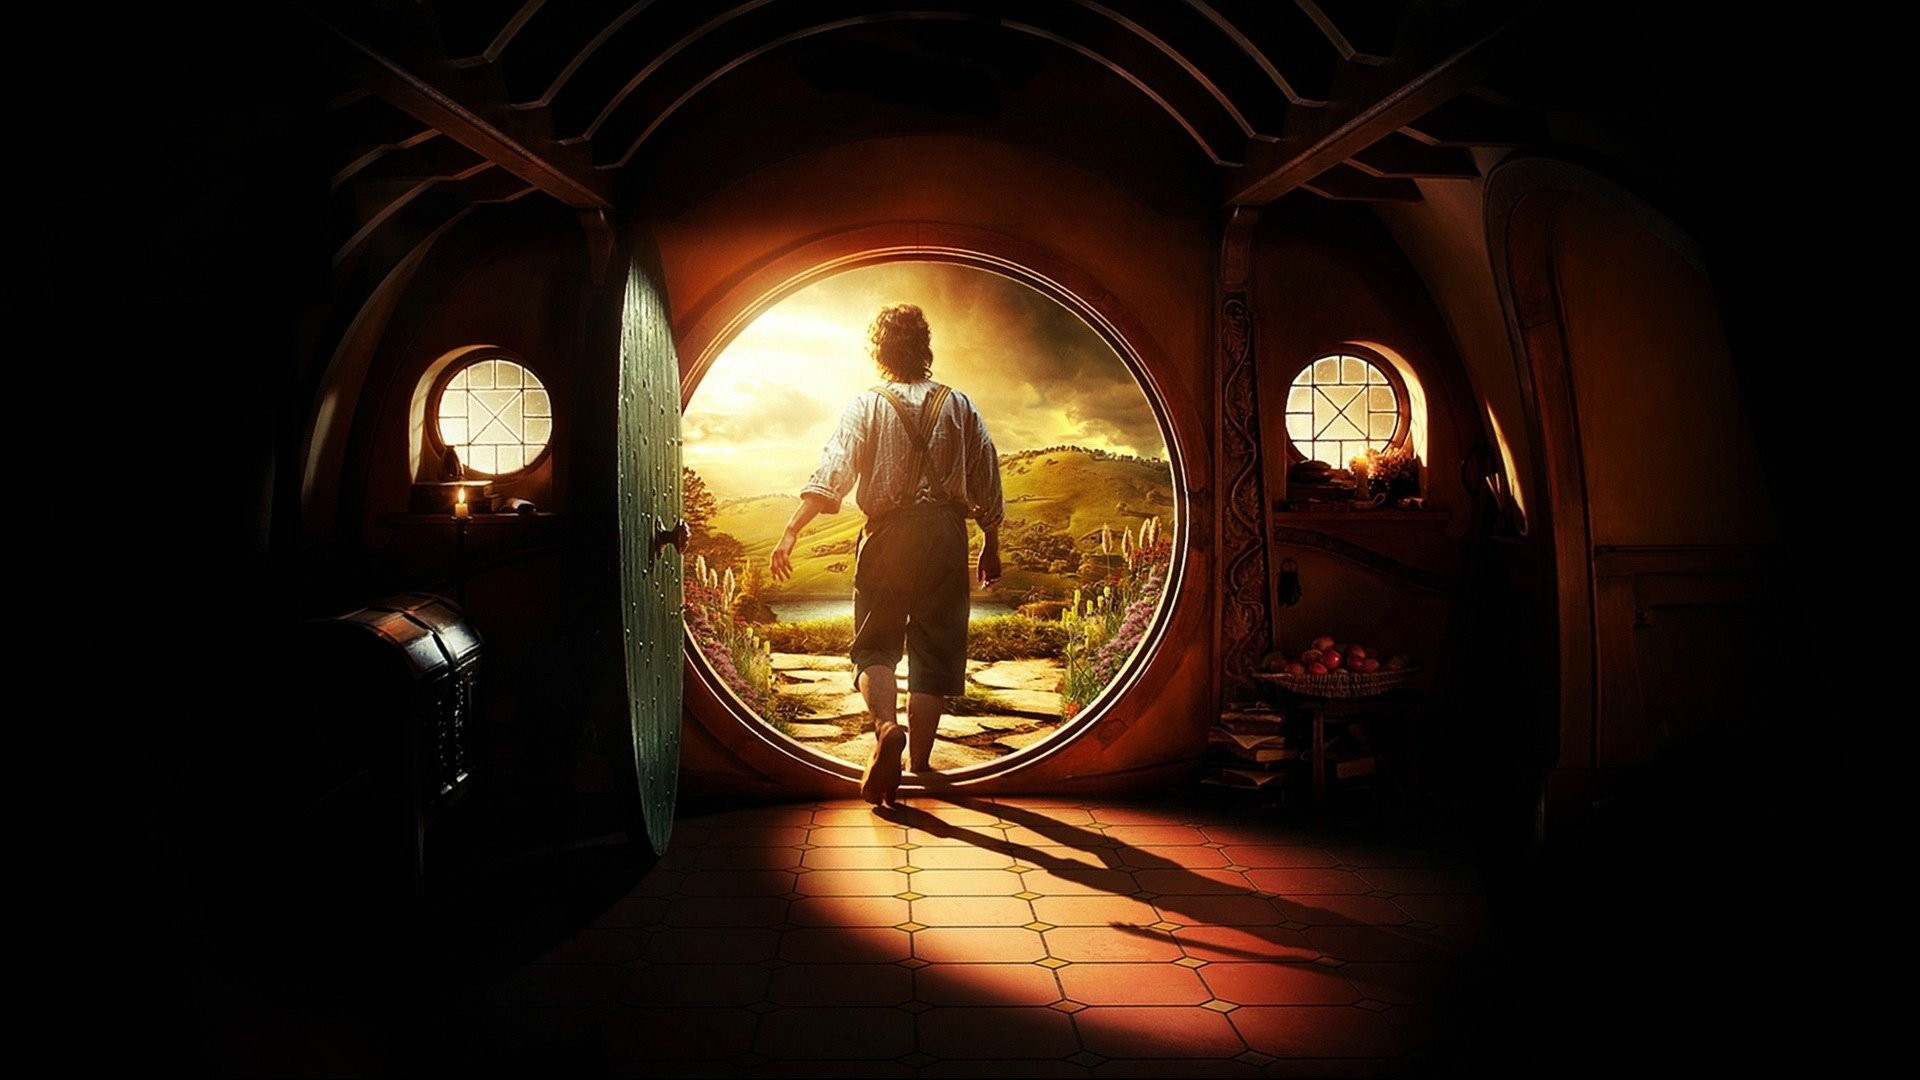 1920x1080 Filme - Der Hobbit: Eine unerwartete Reise Wallpaper